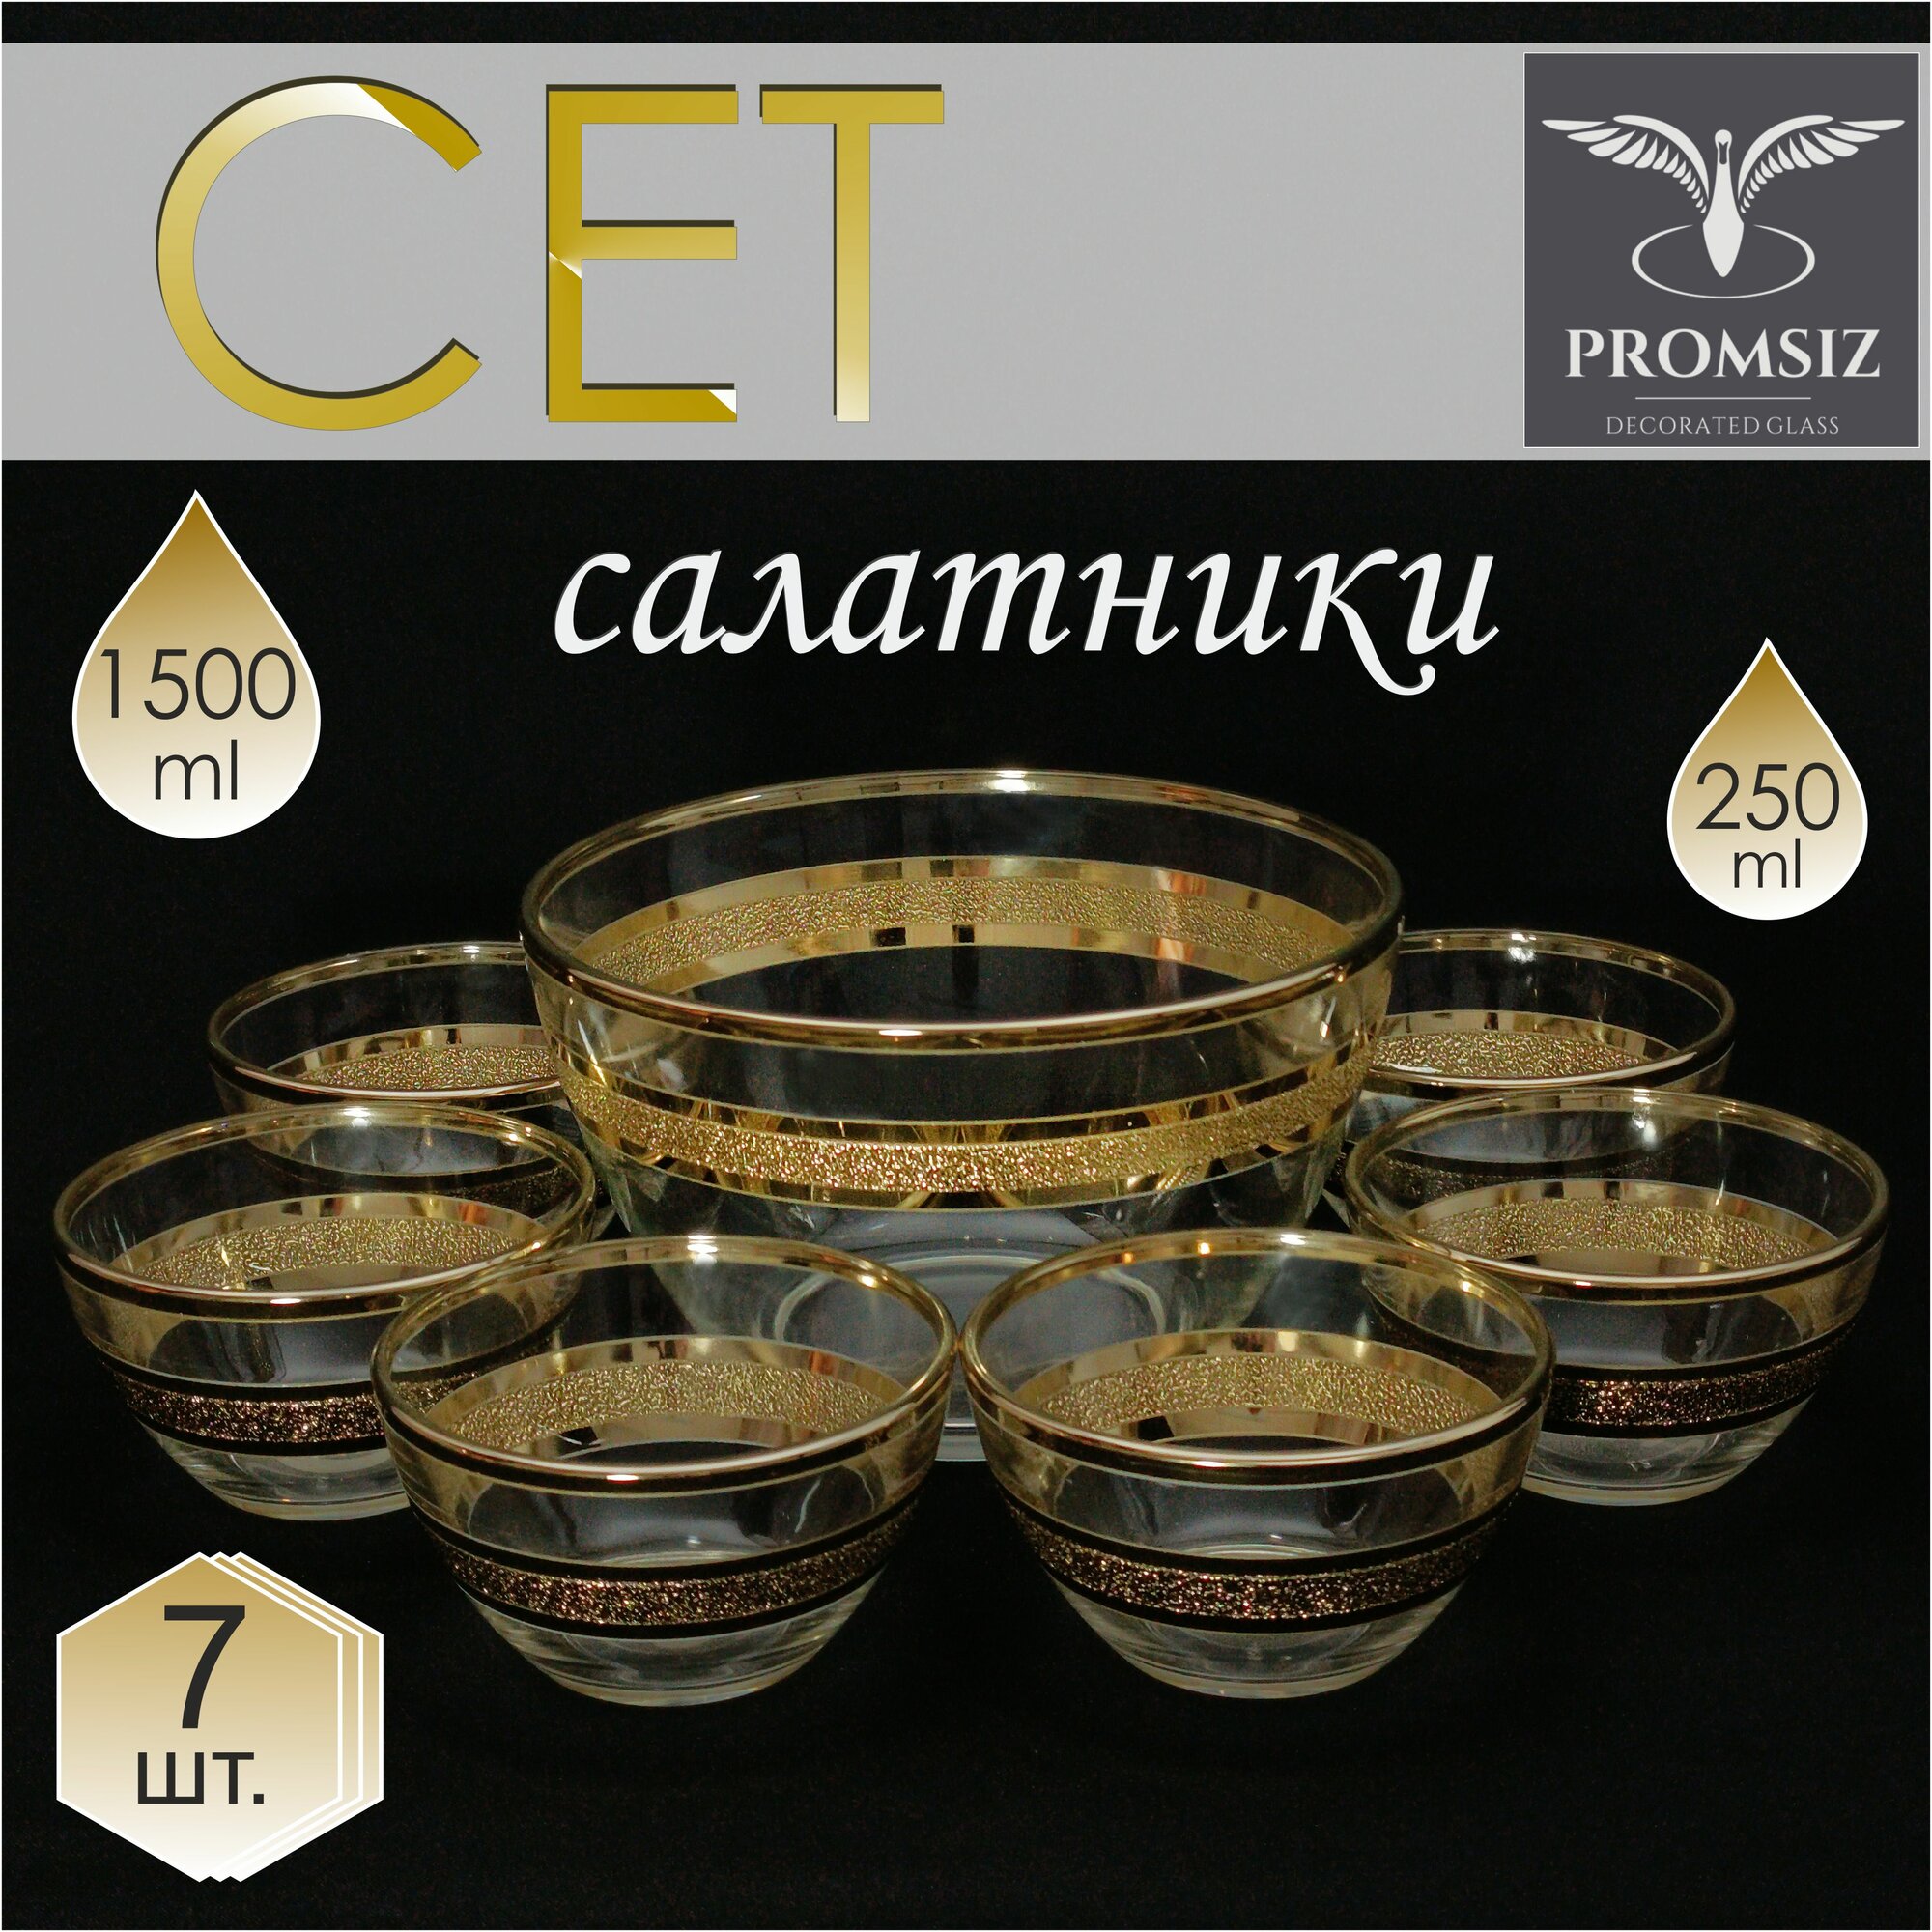 Подарочный набор стеклянных салатников с алмазной гравировкой PROMSIZ ультра, 1500 мл 1 шт.+ 250 мл 6 шт./ Посуда для сервировки и подачи / 7 шт.